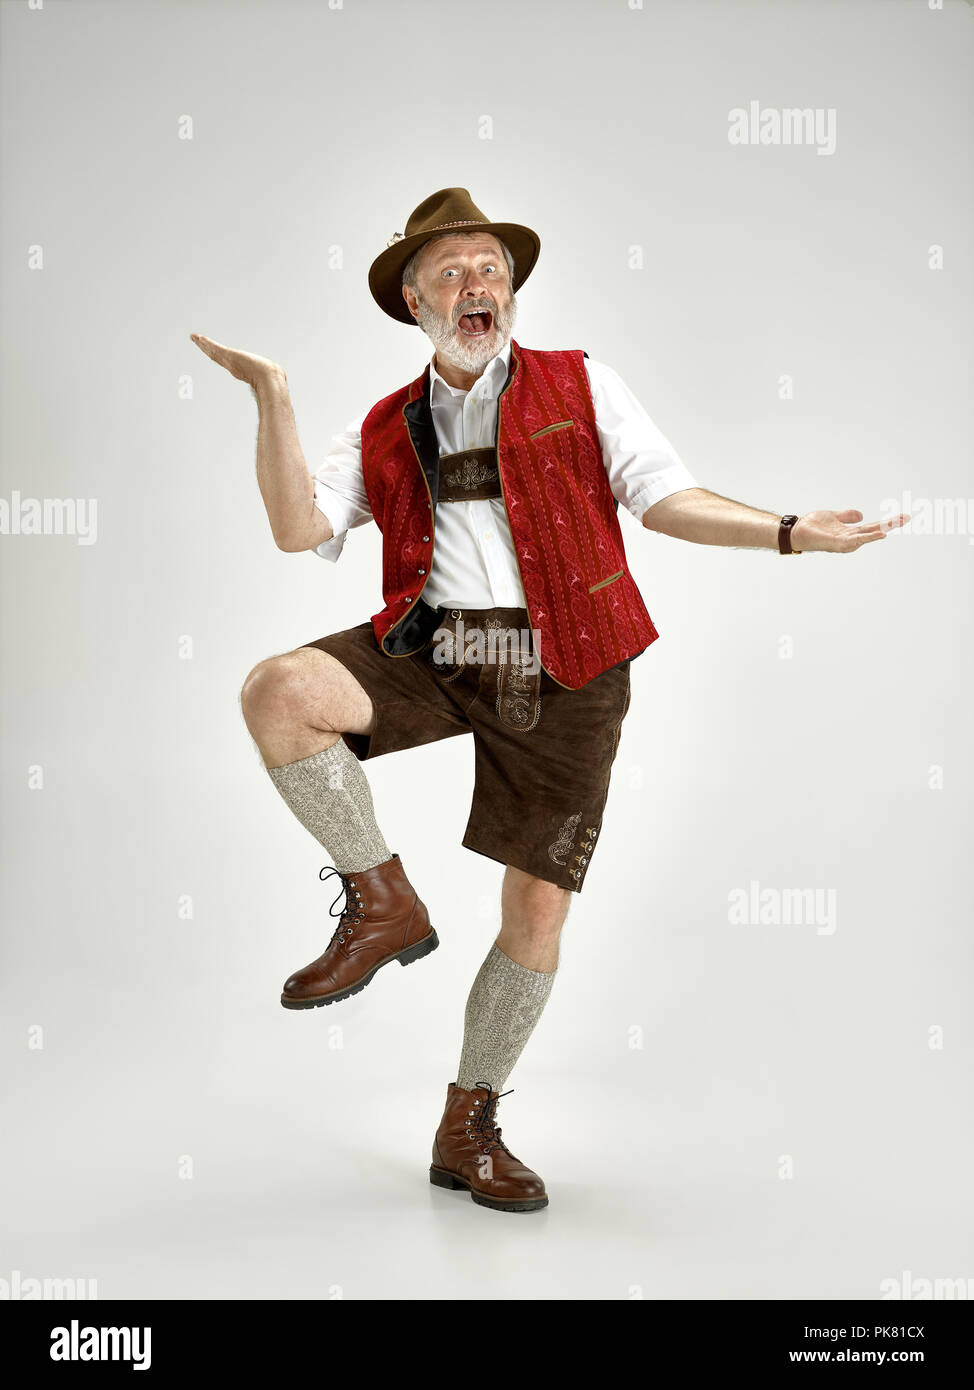 Portrait von Oktoberfest älterer Mann in hat, trägt eine traditionelle bayerische Kleidung bei voller stehend - Länge im Studio. Die Feier, Oktoberfest, festival Konzept Stockfoto